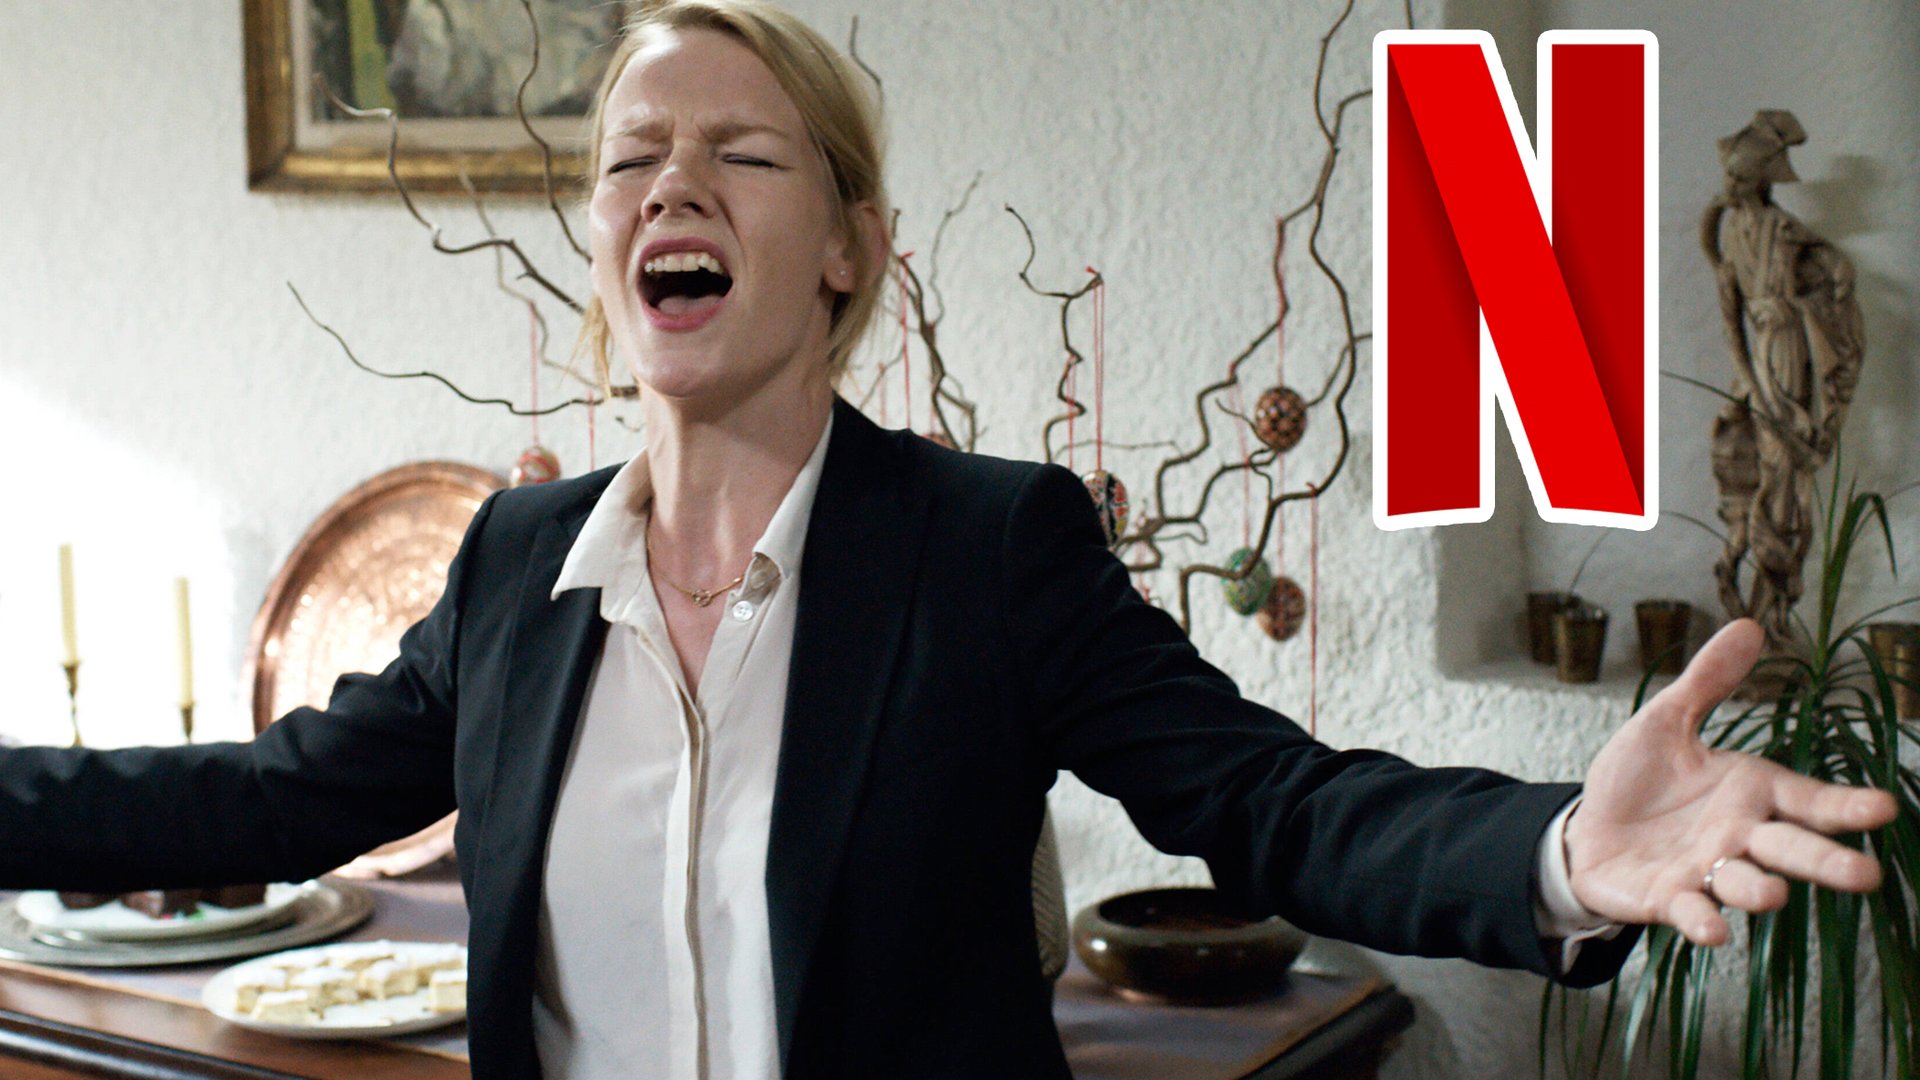 #Jetzt bei Netflix: Dieser Film beweist endlich, wie großartig deutsches Kino sein kann